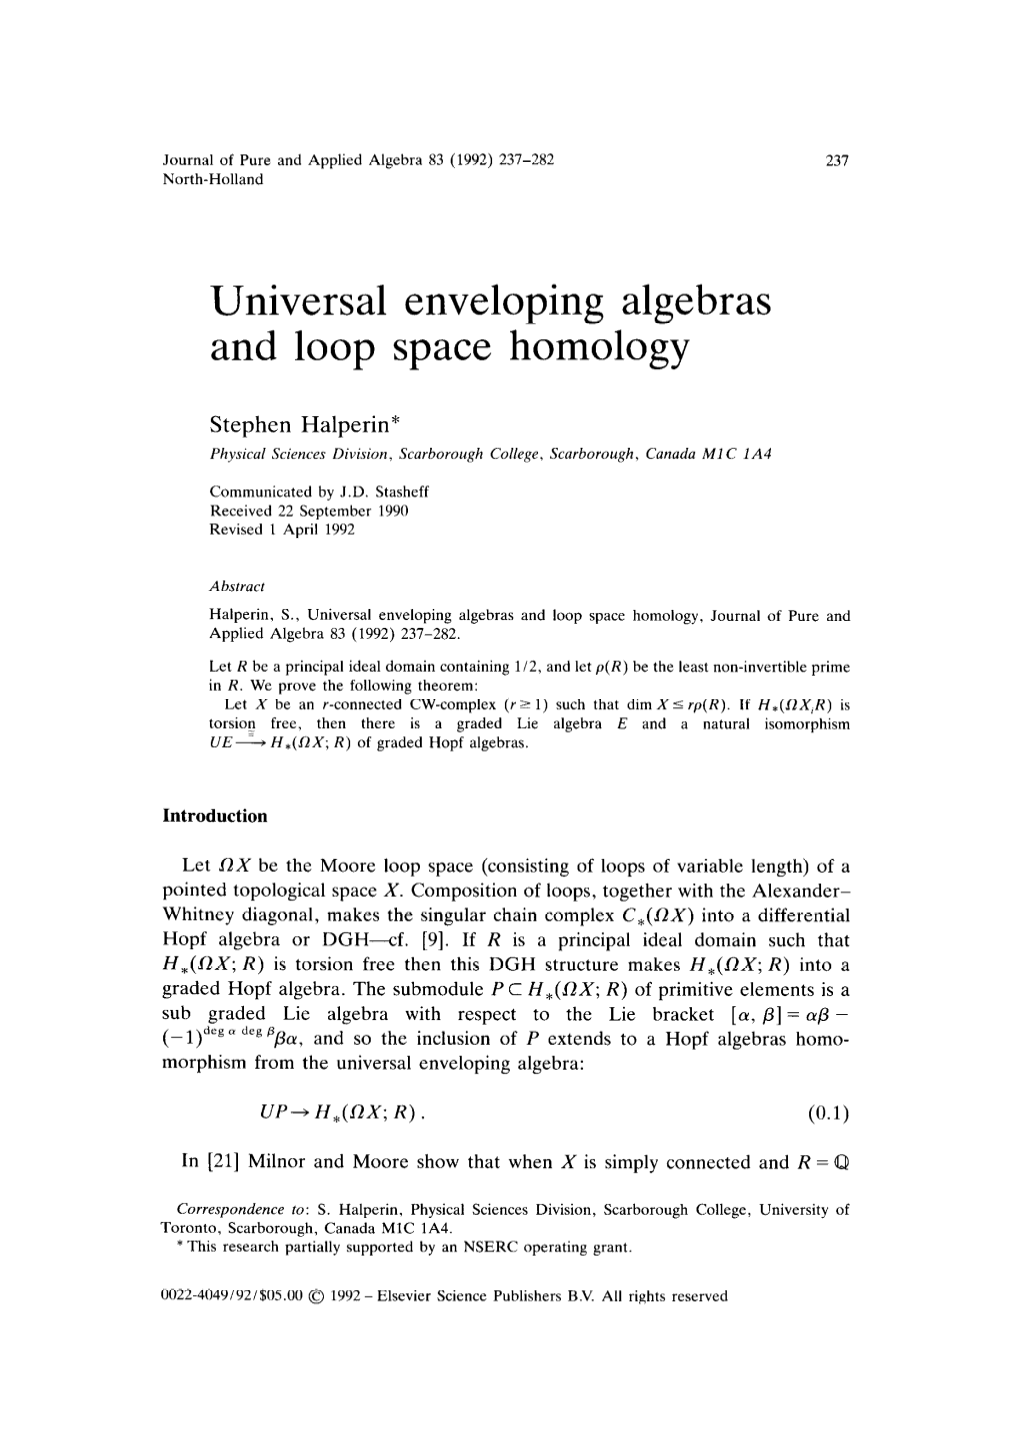 Universal Enveloping Algebras and Loop Space Homology